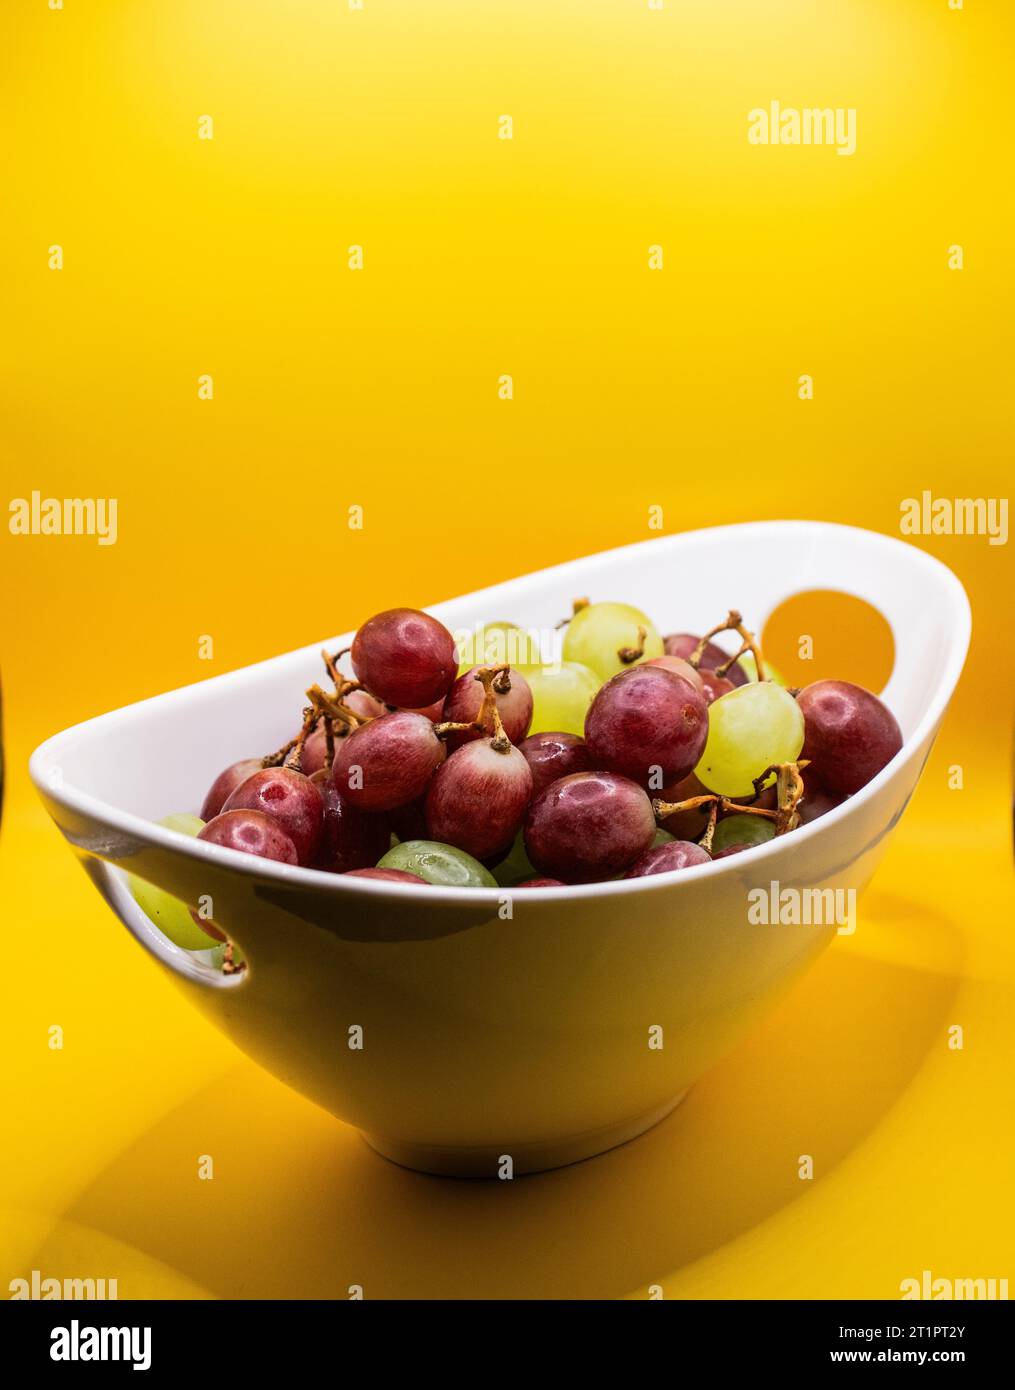 Una ciotola piena di uva Foto Stock